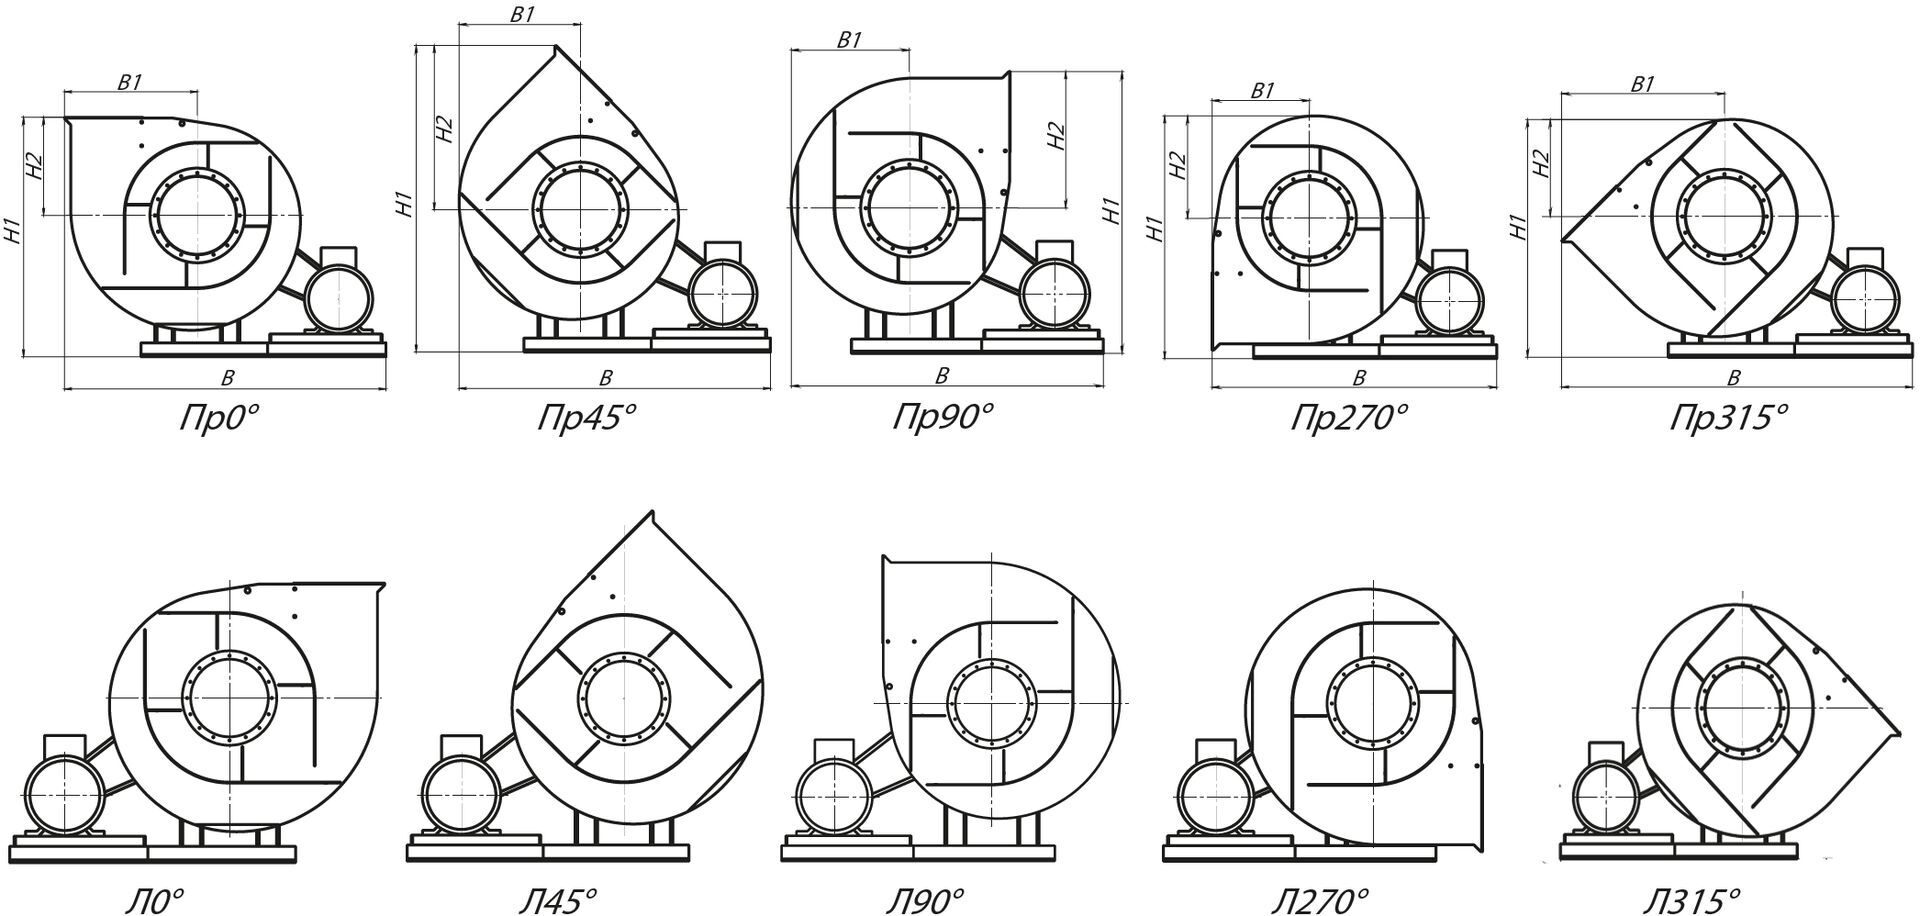 Стандартные варианты углов поворота корпуса вентиляторов ВРП 122-45-8 (№8) схема 5 (исполнение 5)